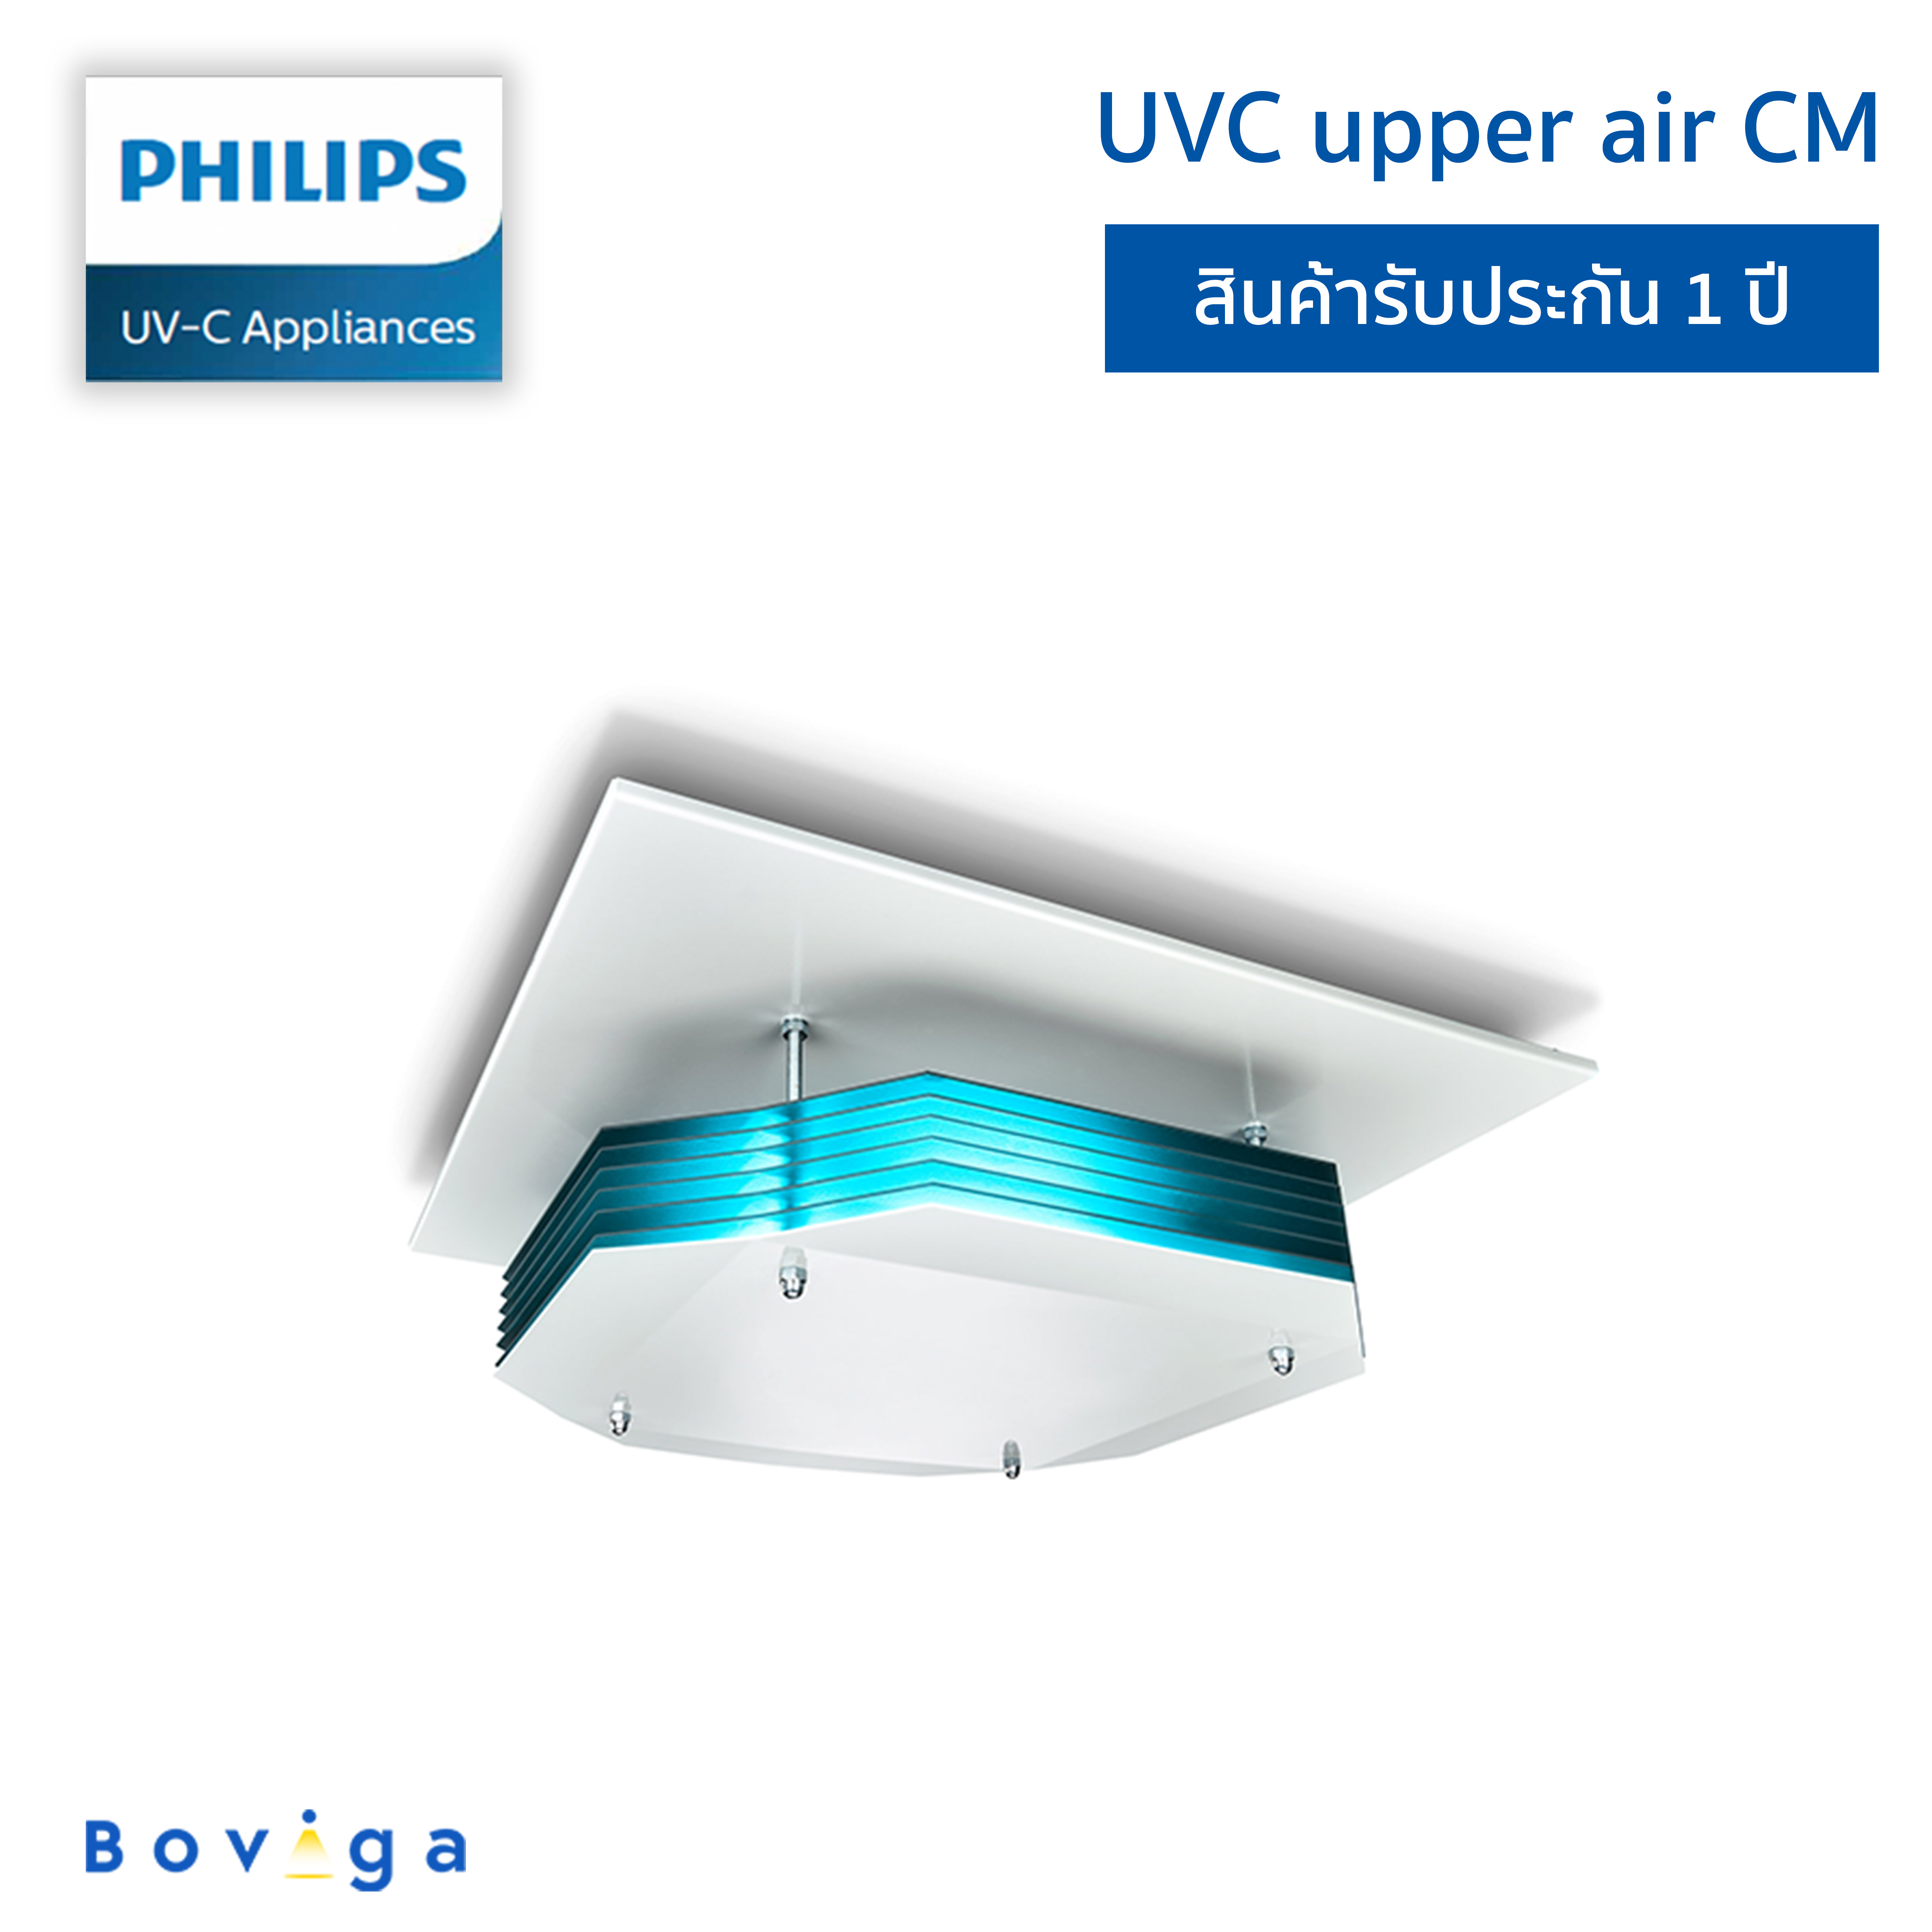 ฟิลิปส์ UVC เครื่องฆ่าเชื้อโรคในอากาศแบบติดตั้งเพดาน | UVC Disinfection upper air CM